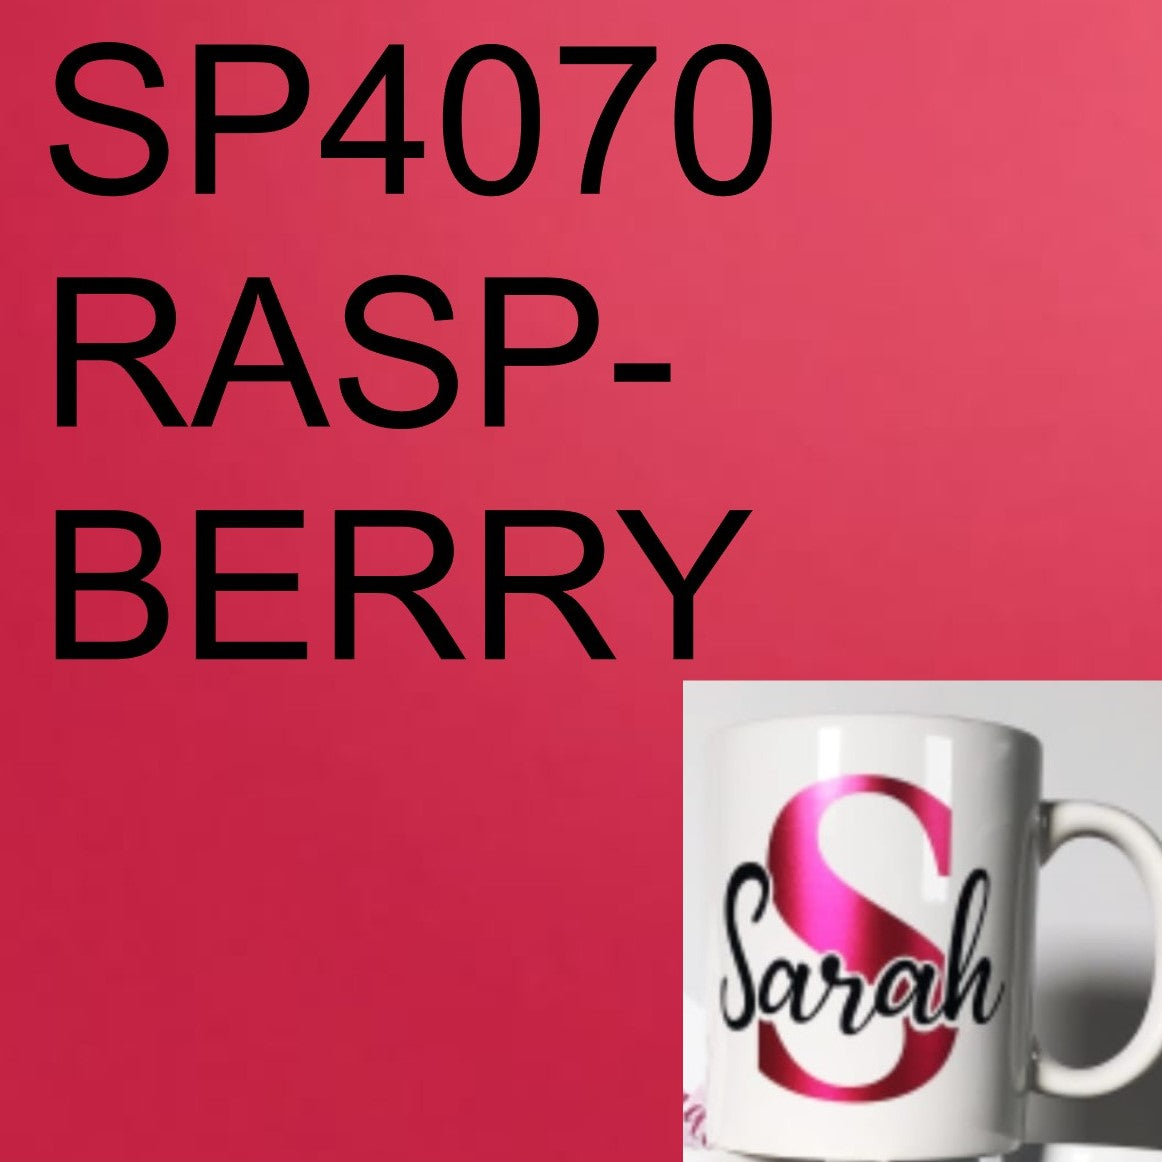 Superior SP4070 Raspberry